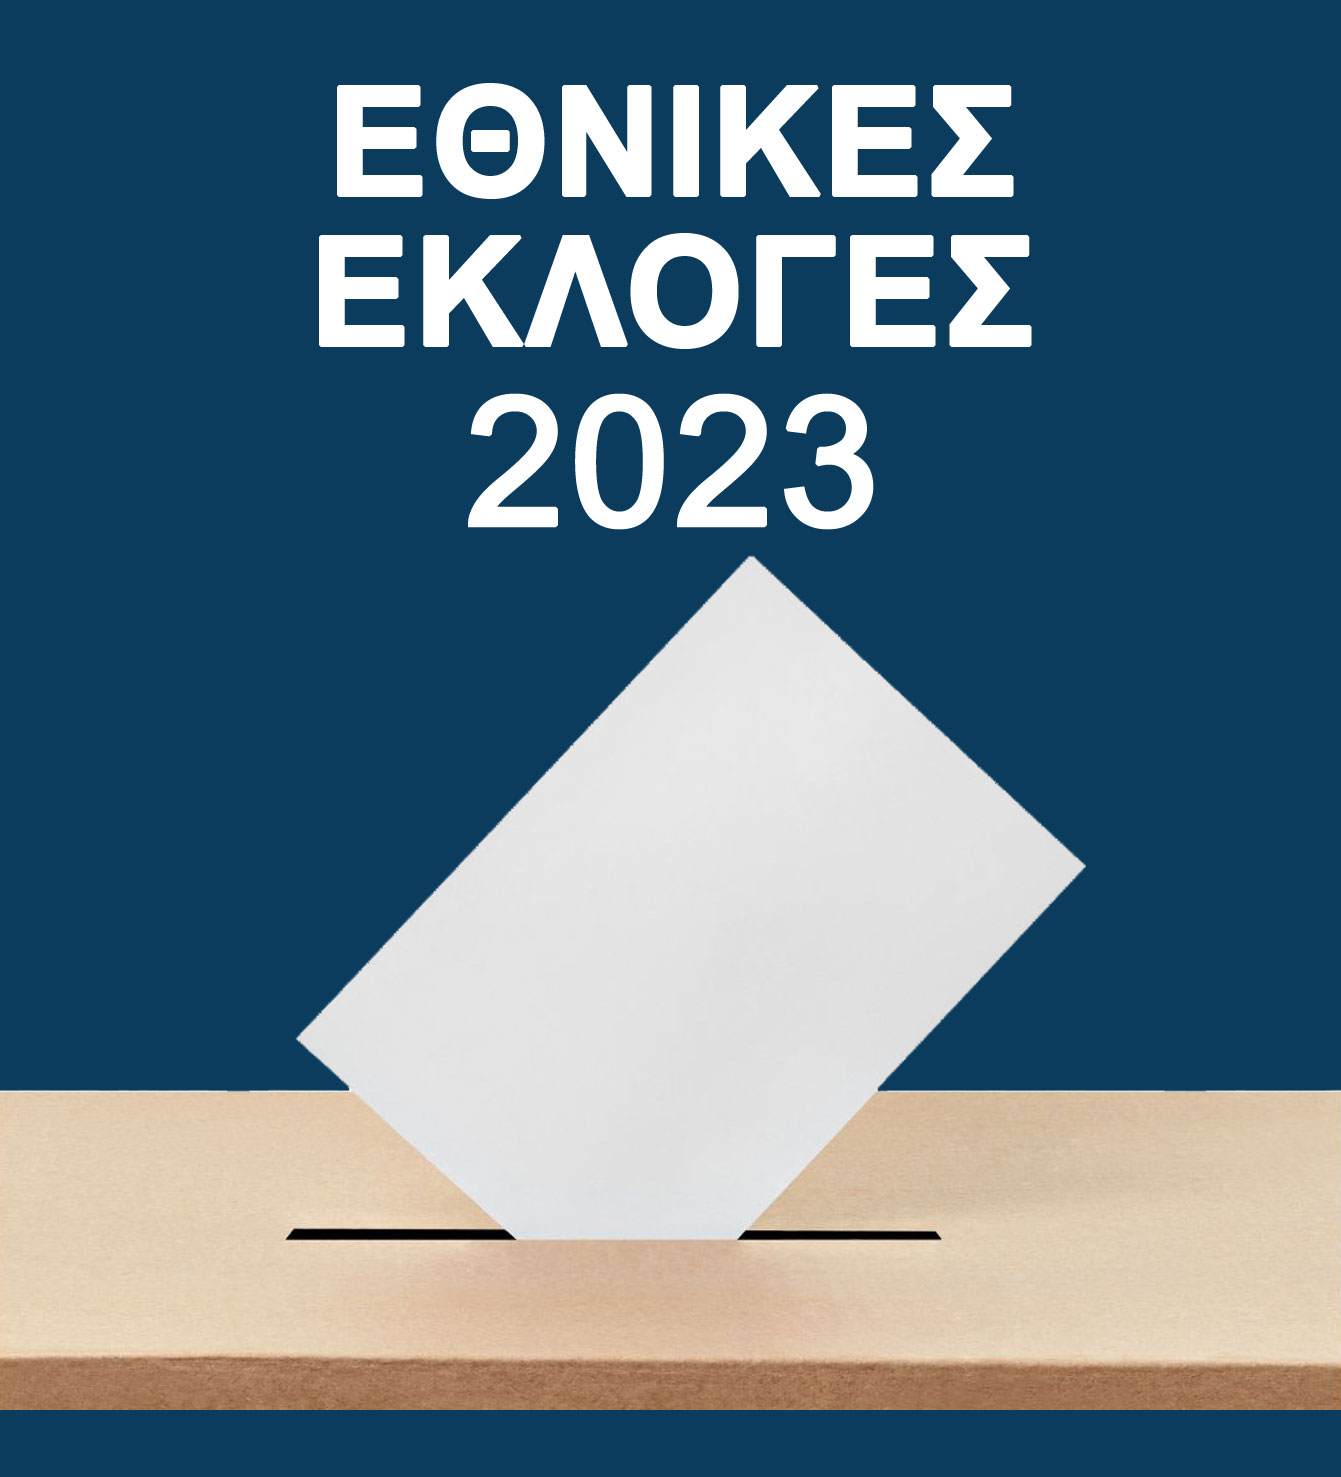 Απόφαση Δημοτικού Συμβουλίου Μαρκοπούλου για έγκριση πρακτικού διακομματικής επιτροπής καθορισμού χώρων και τρόπου χρήσης αυτών εν όψει των Βουλευτικών Εκλογών της 21-5-2023.